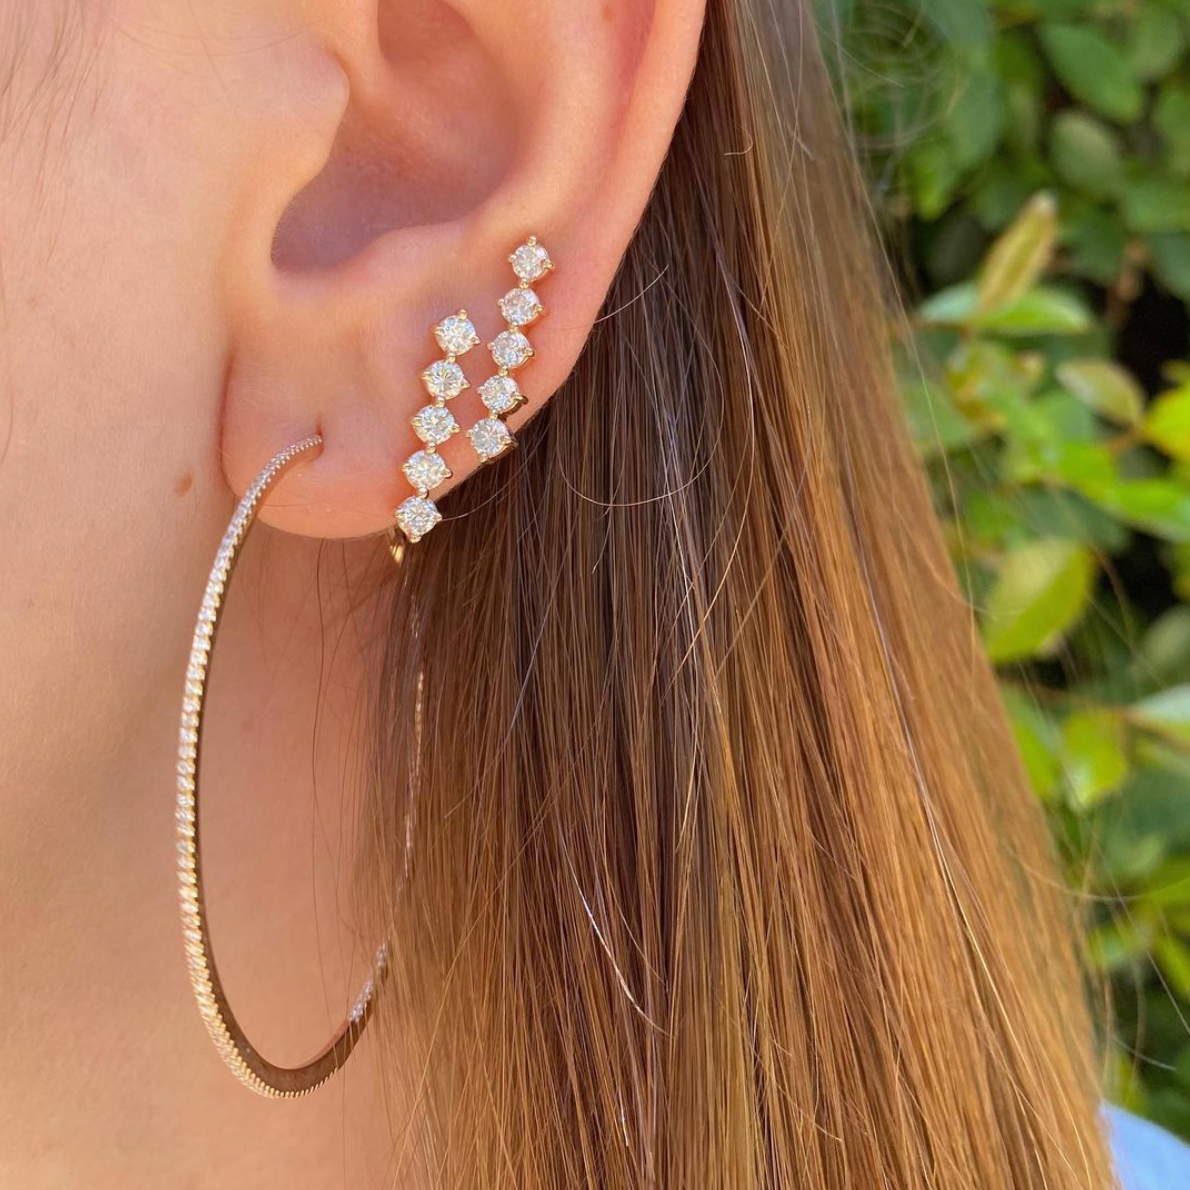 Ear cuffs, Ears and Cuffs on Pinterest | Ear cuff earings, Diamond ear cuff,  Ear jewelry